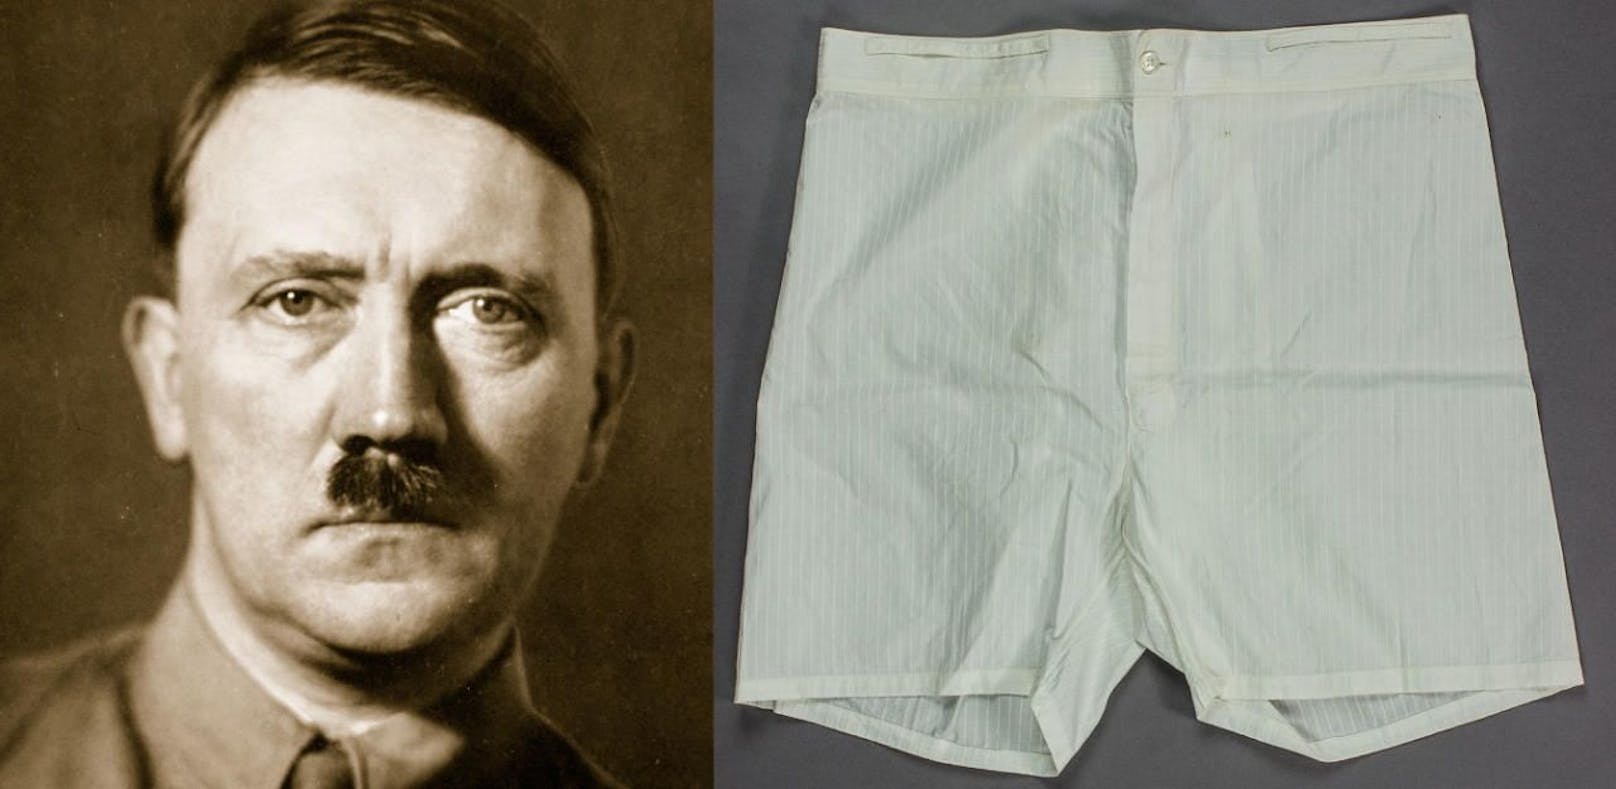 Hitlers unterhose sei &quot;überraschend groß&quot;